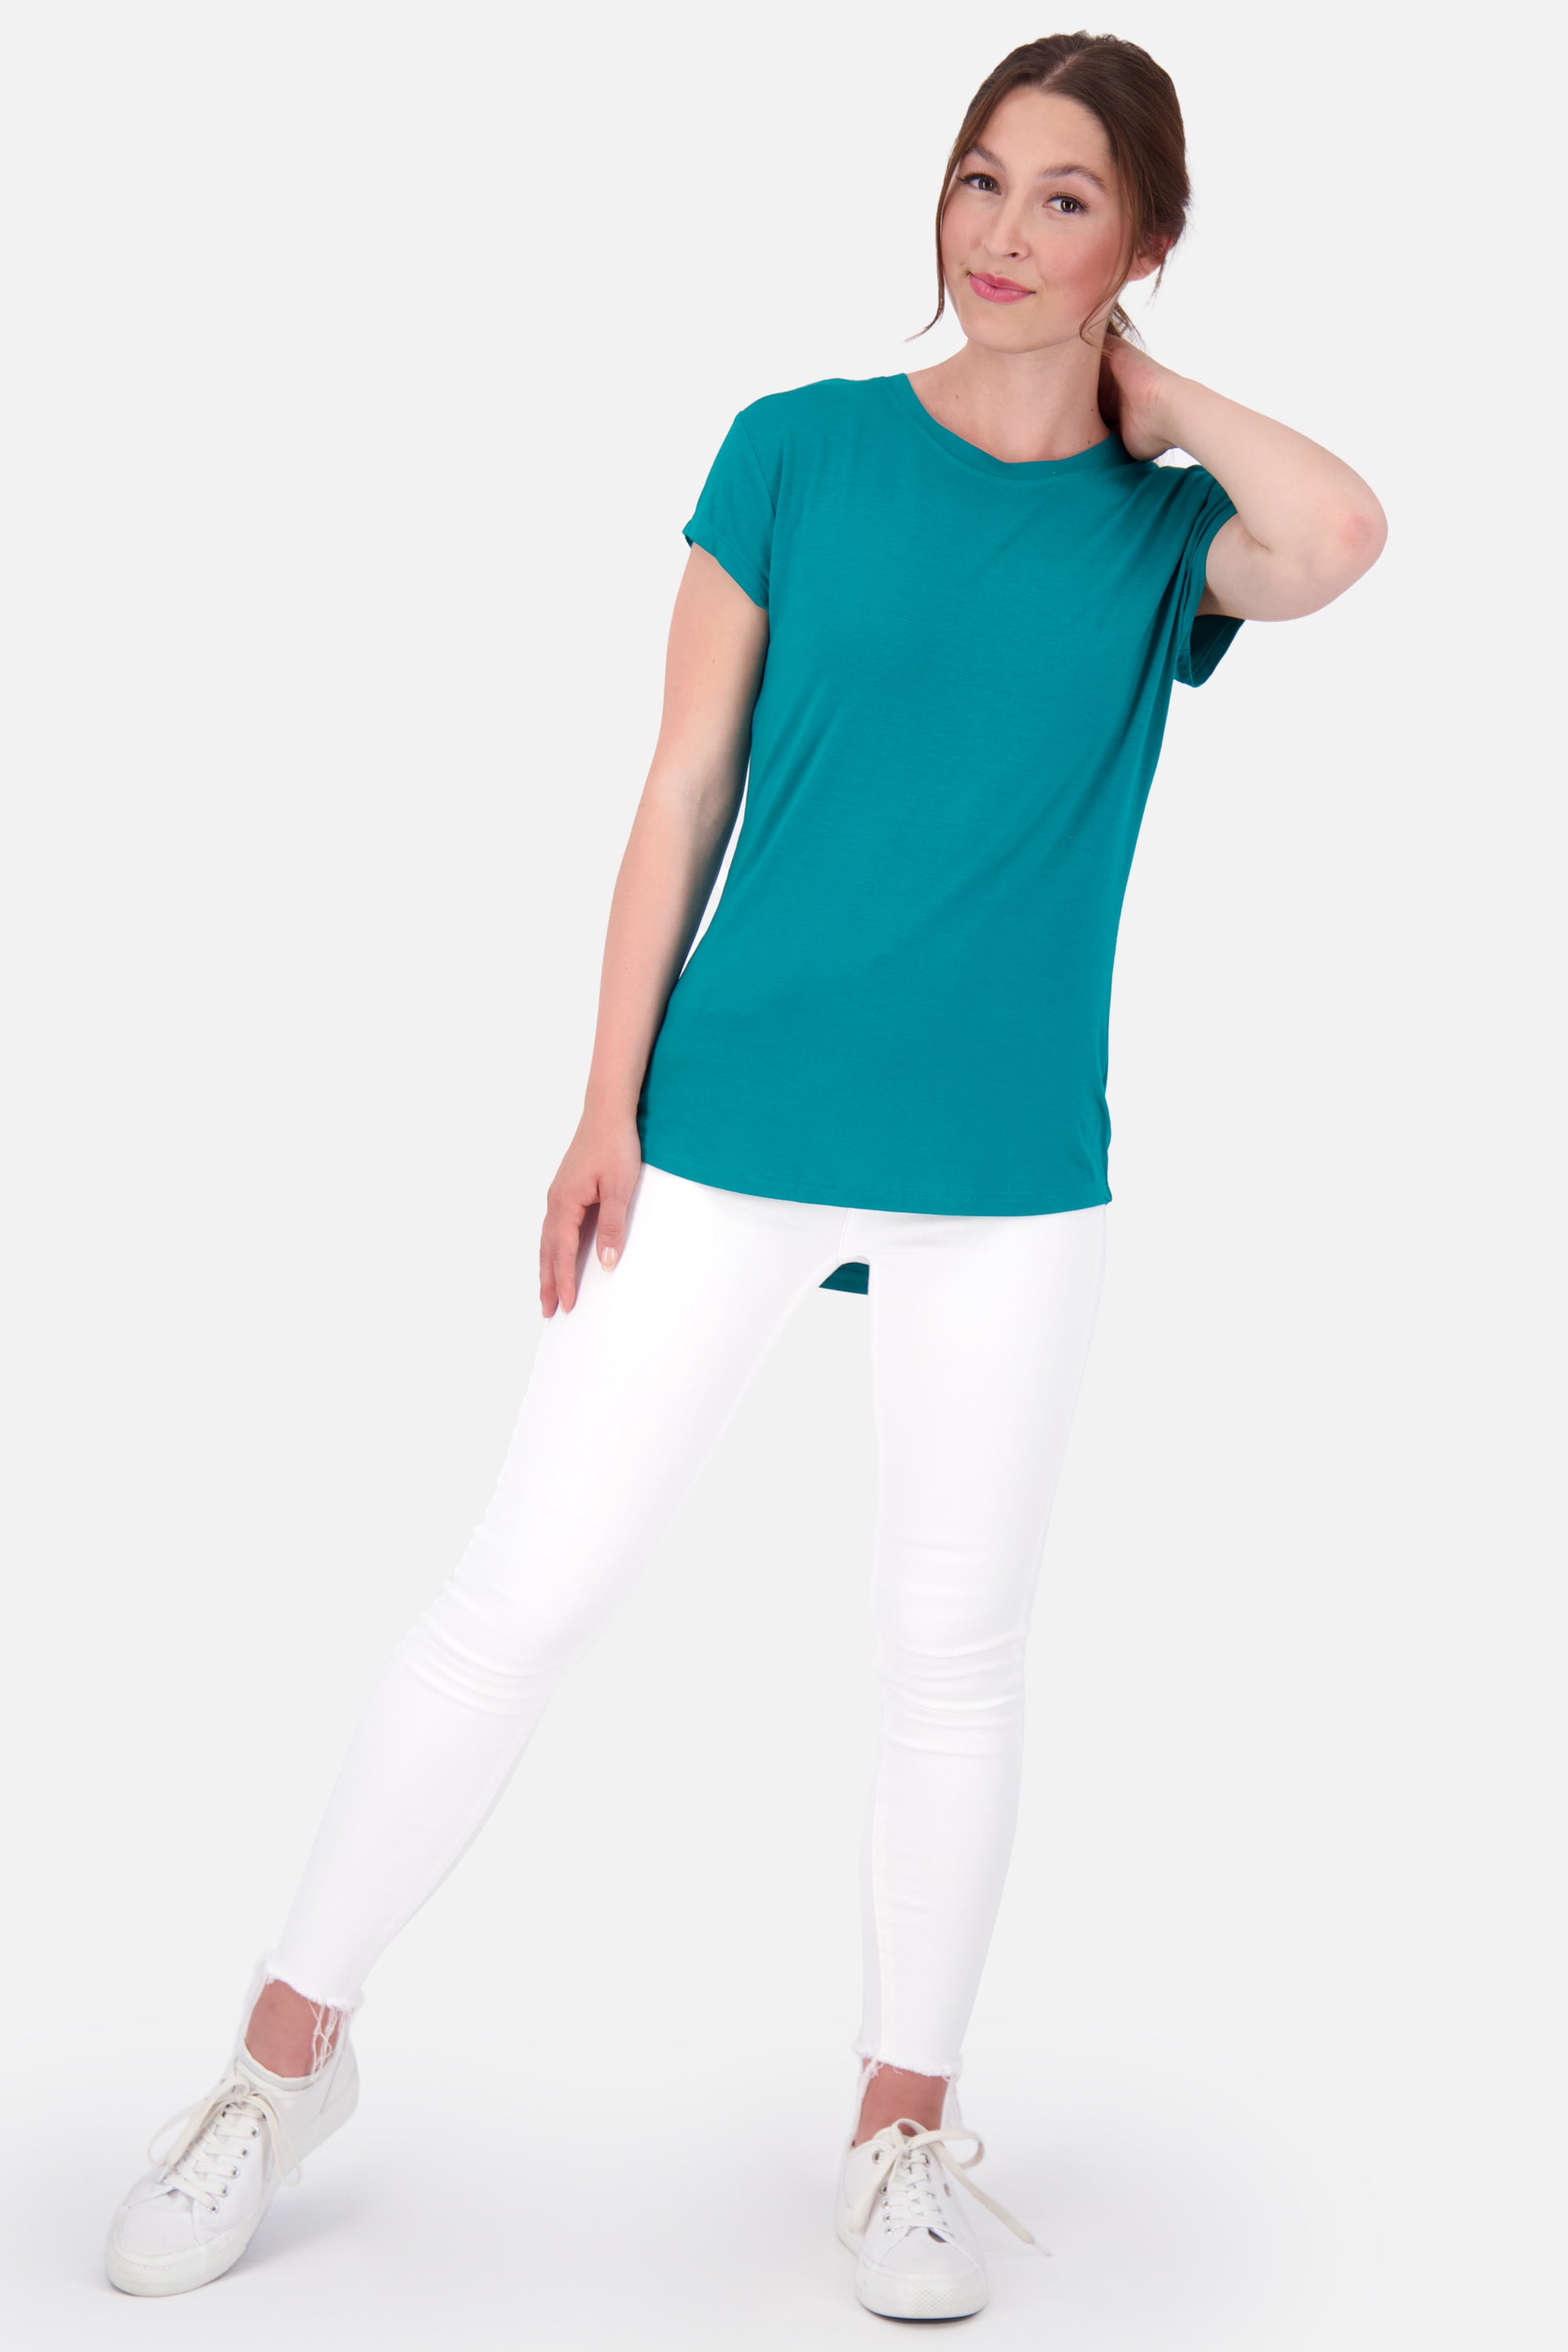 T-Shirt MimmyAK A für Damen - Stilvoll kombinierbar und angenehm zu tragen Dunkelgrün